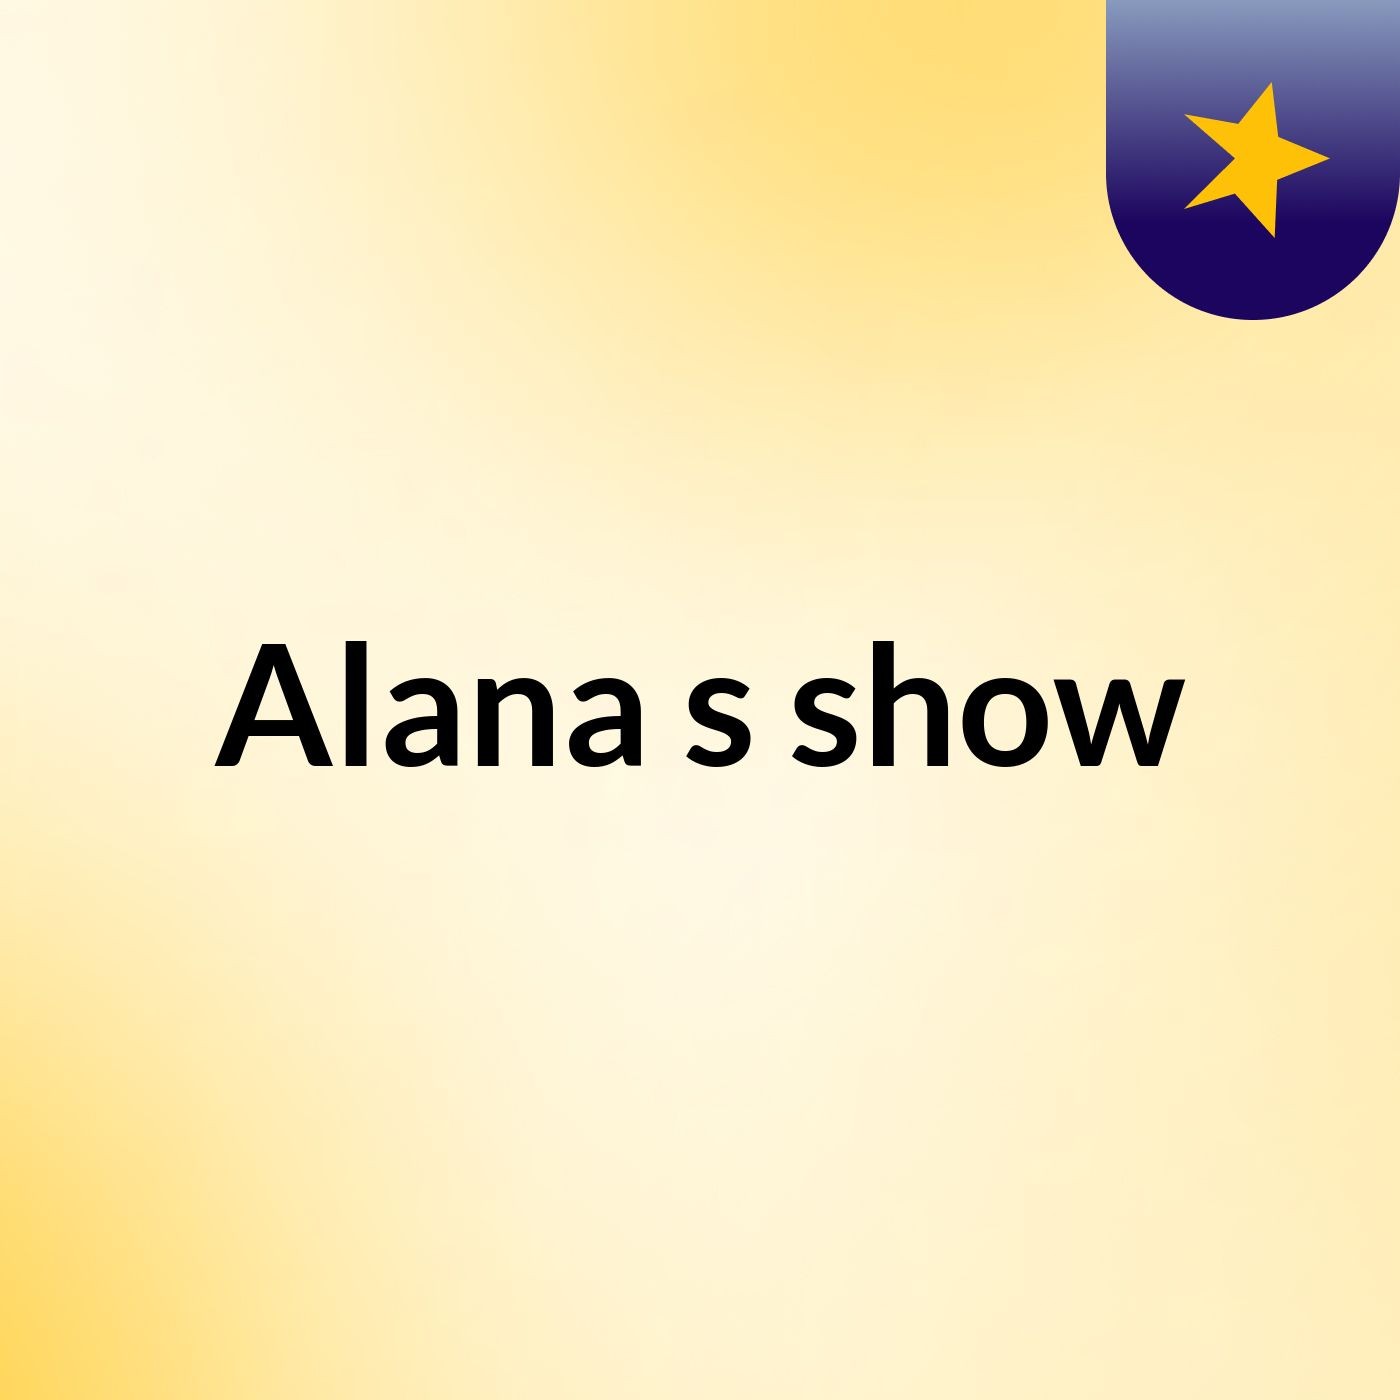 Alana's show